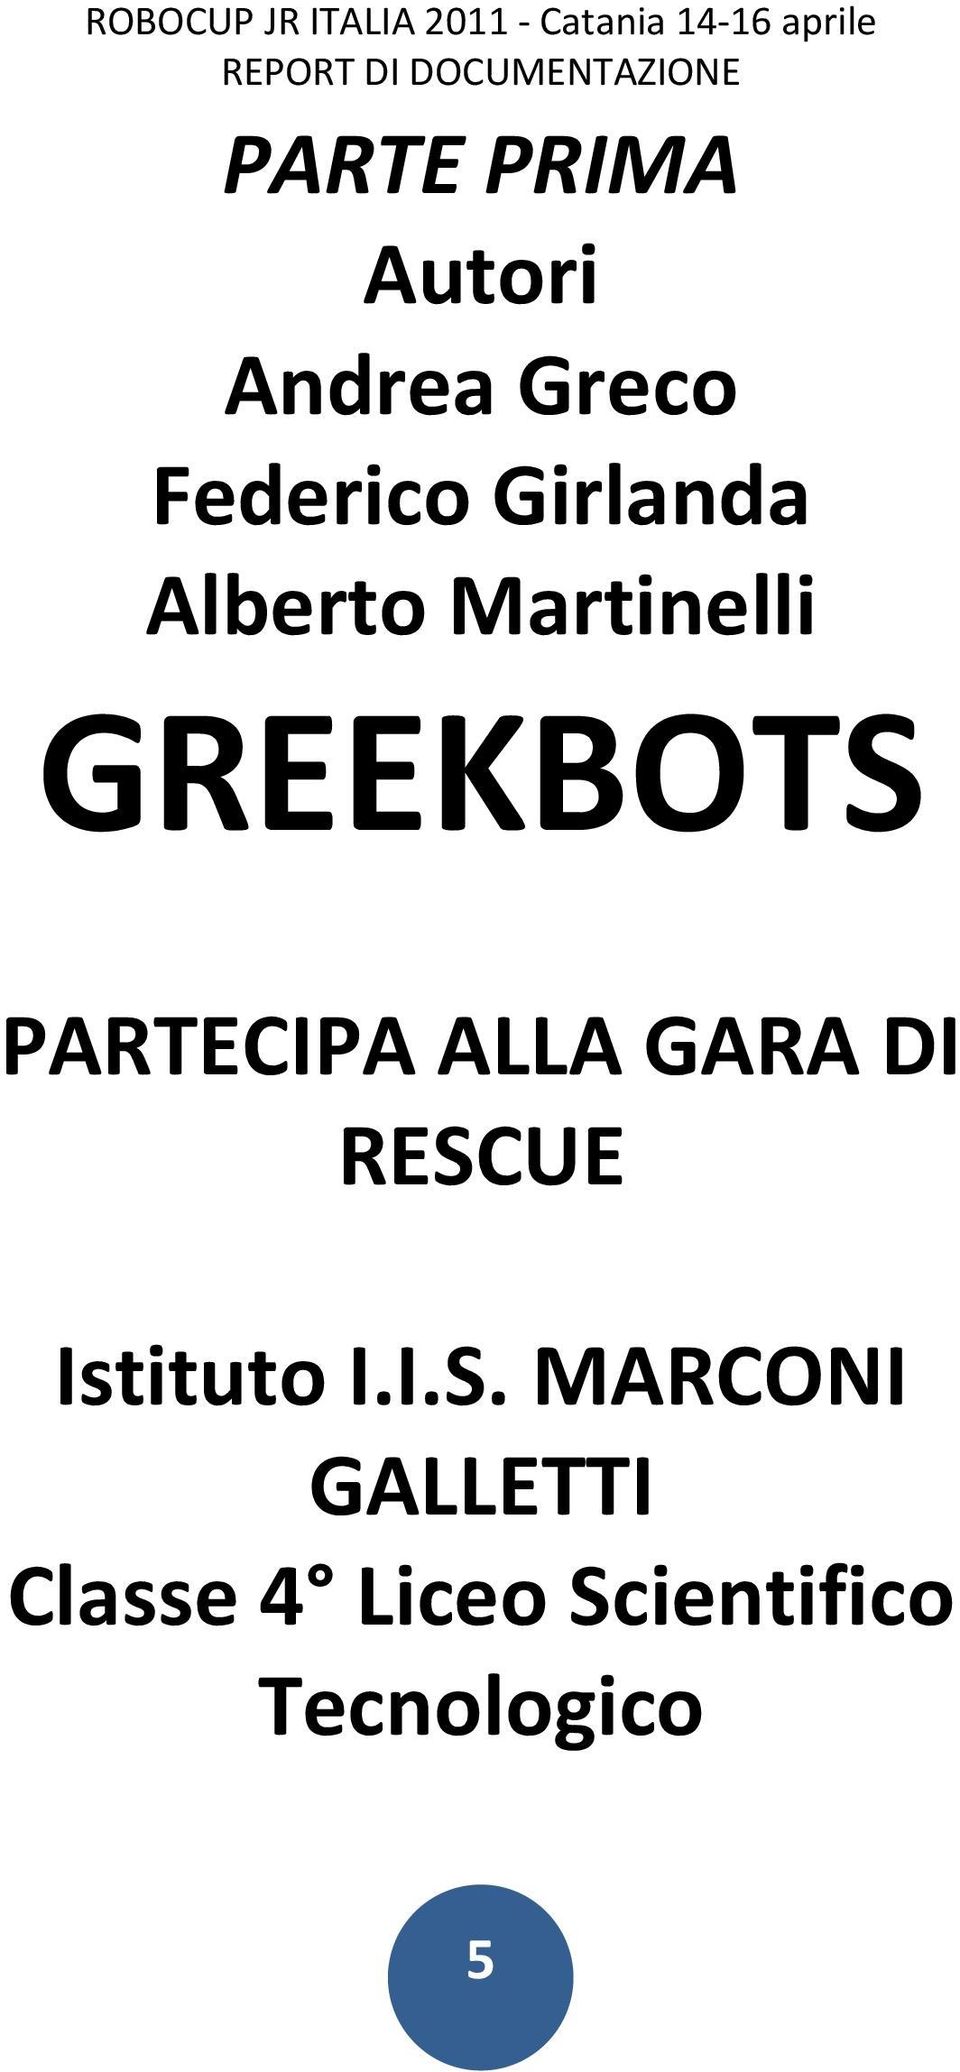 Martinelli GREEKBOTS PARTECIPA ALLA GARA DI RESCUE